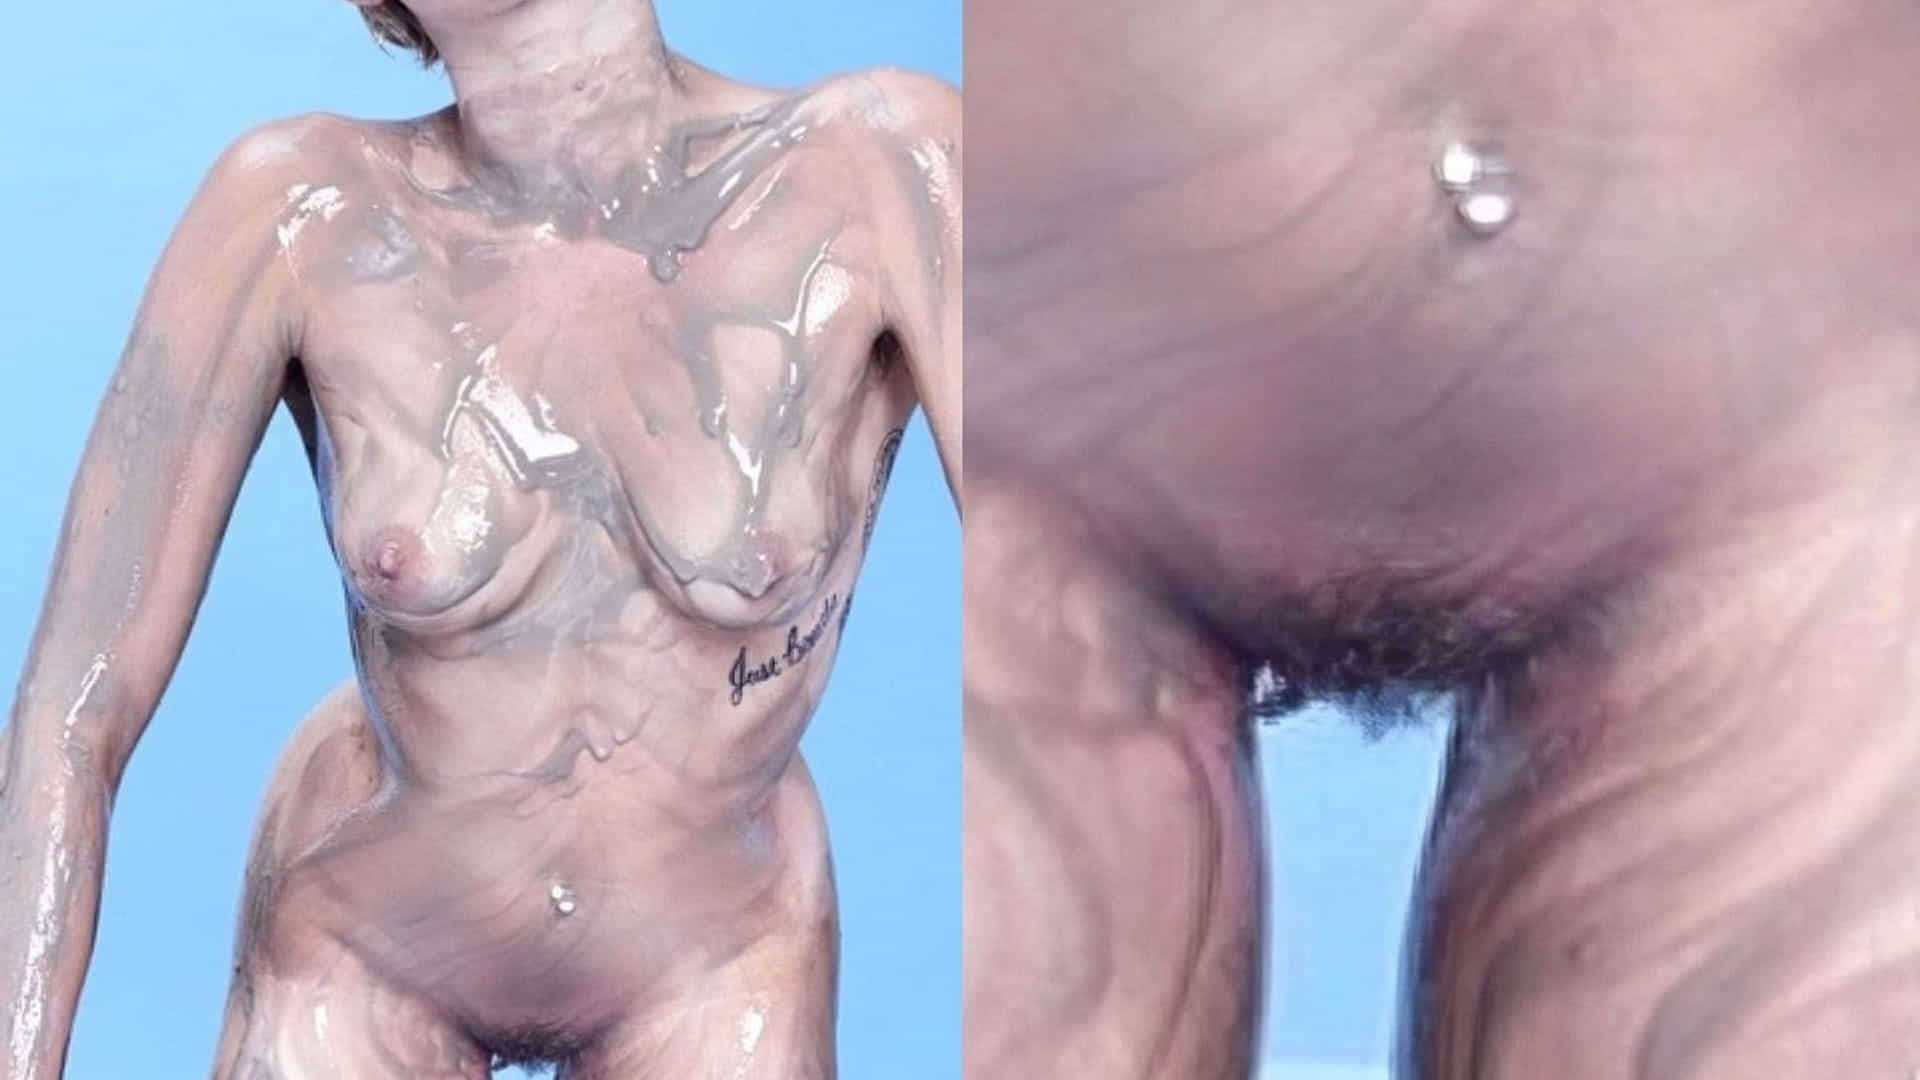 Miley cyrus nudes leaked